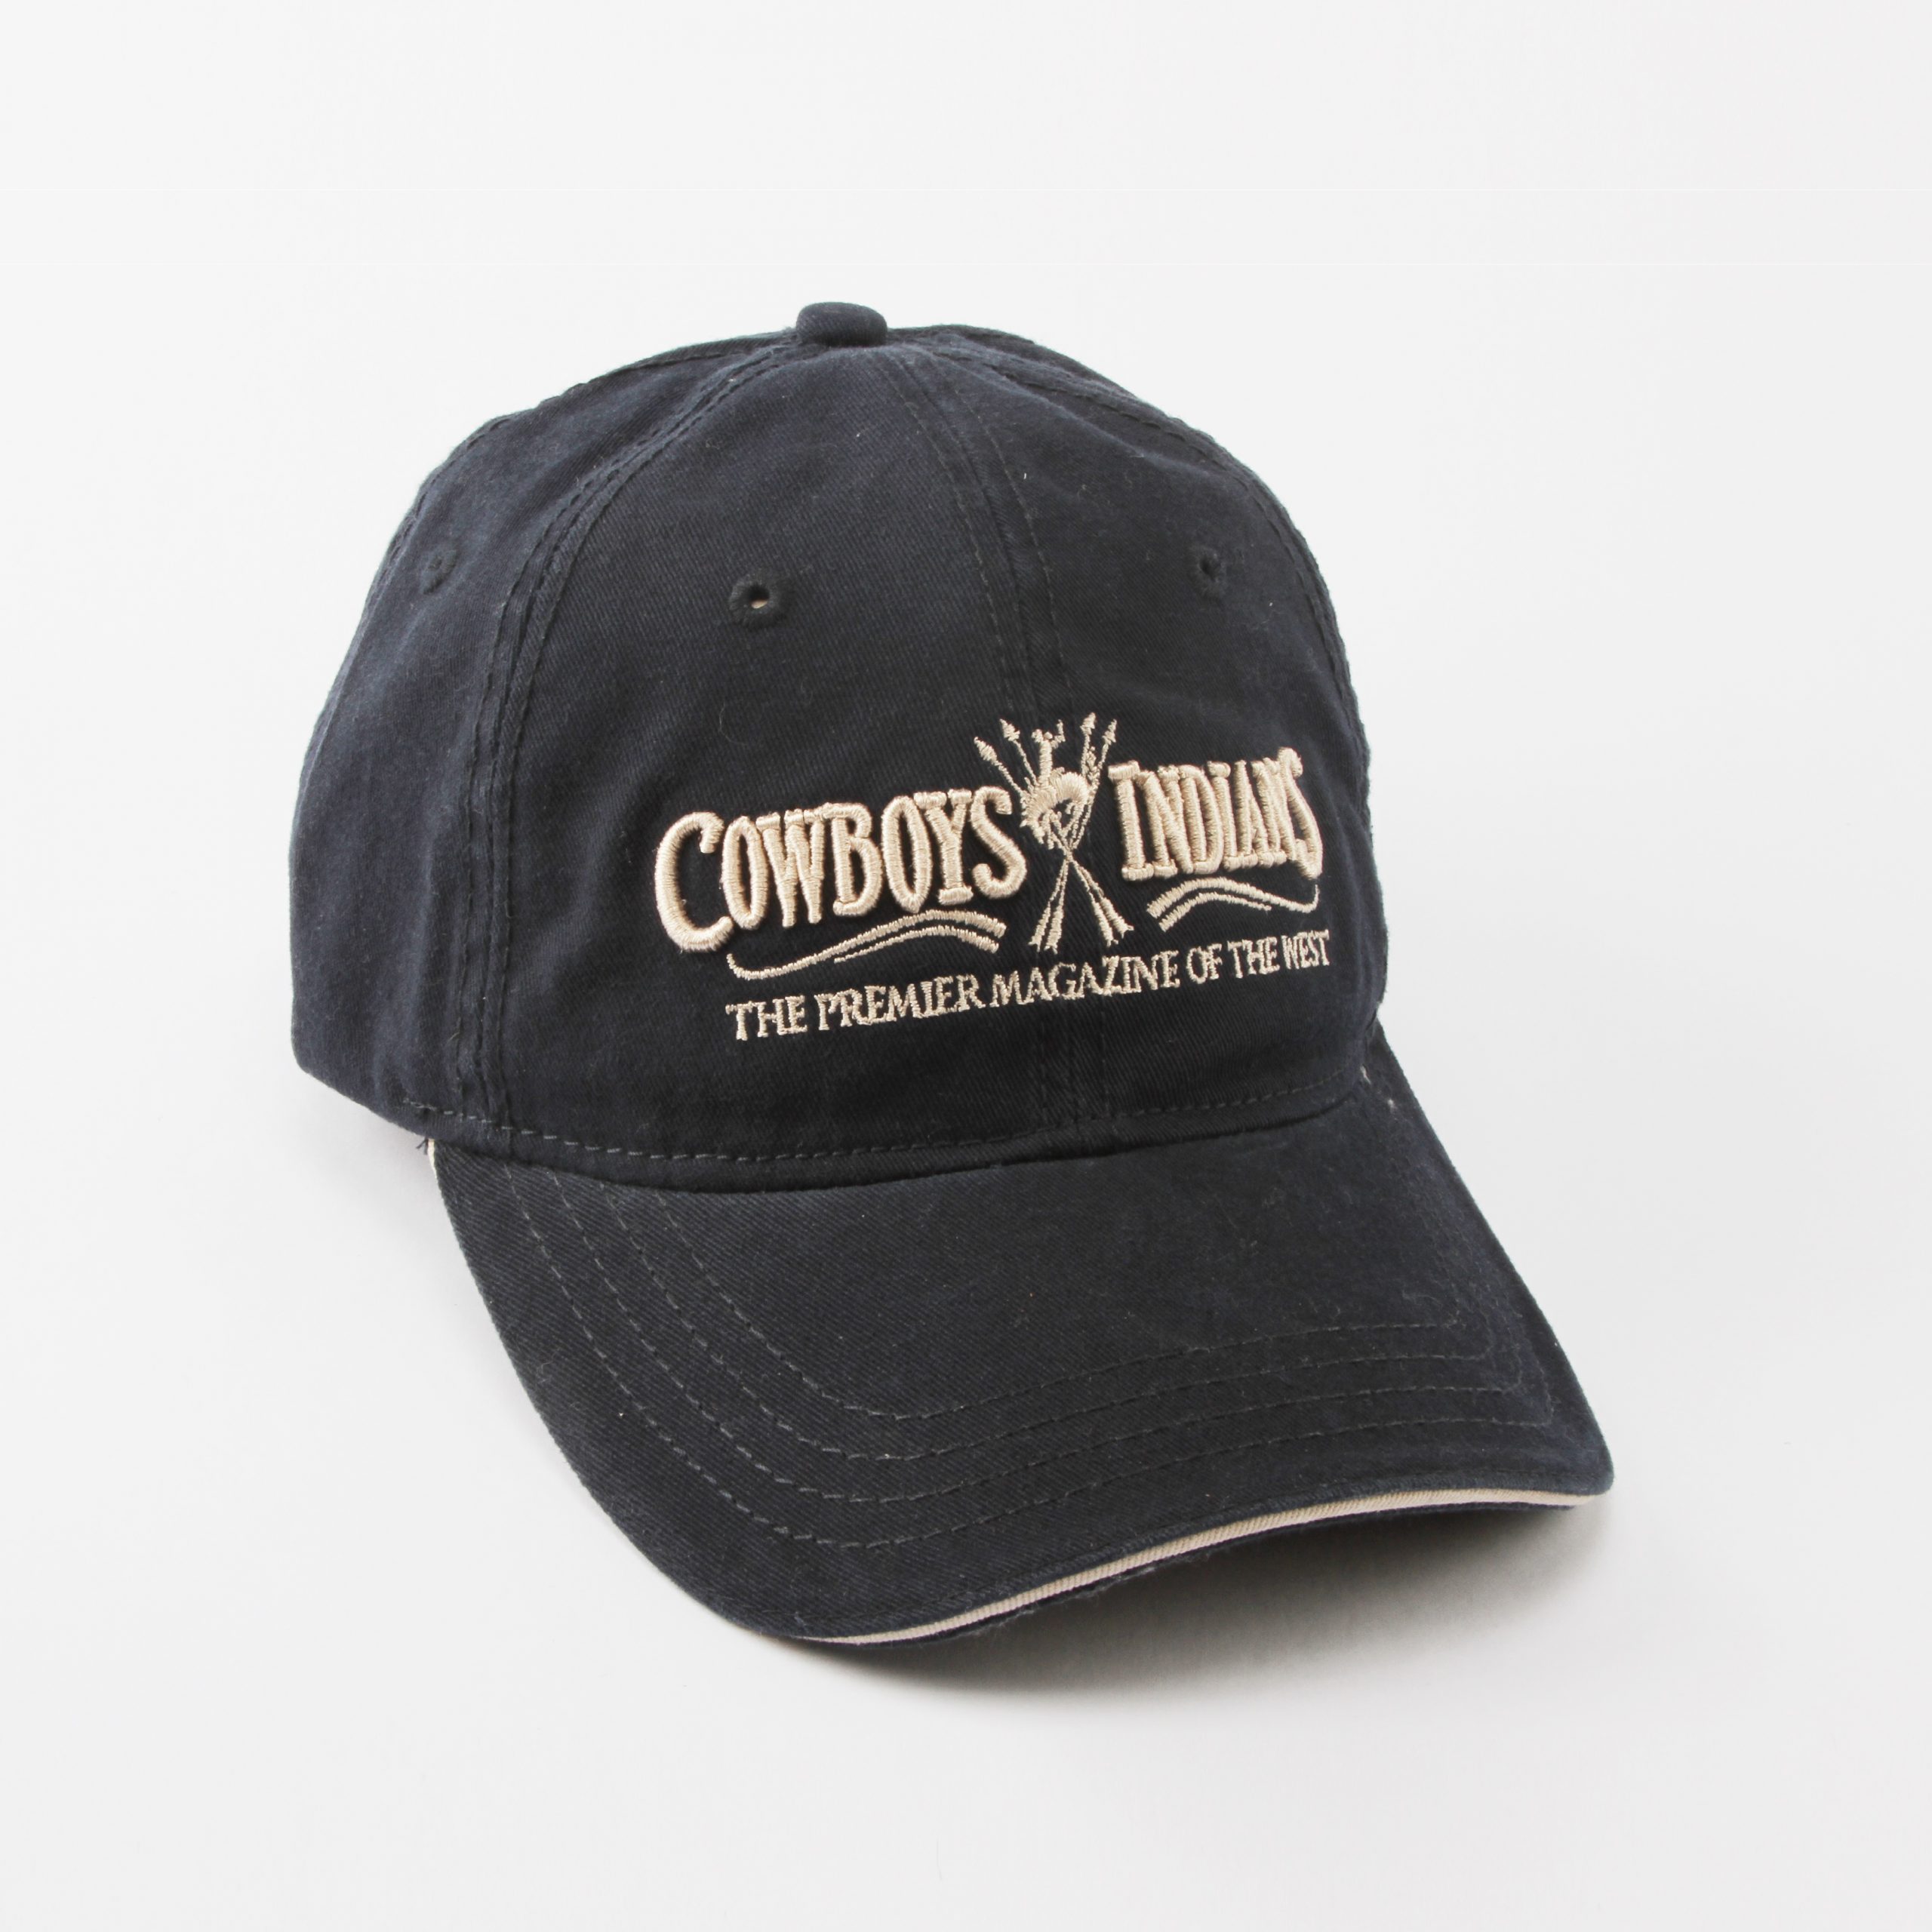 Cowboys baseball cap